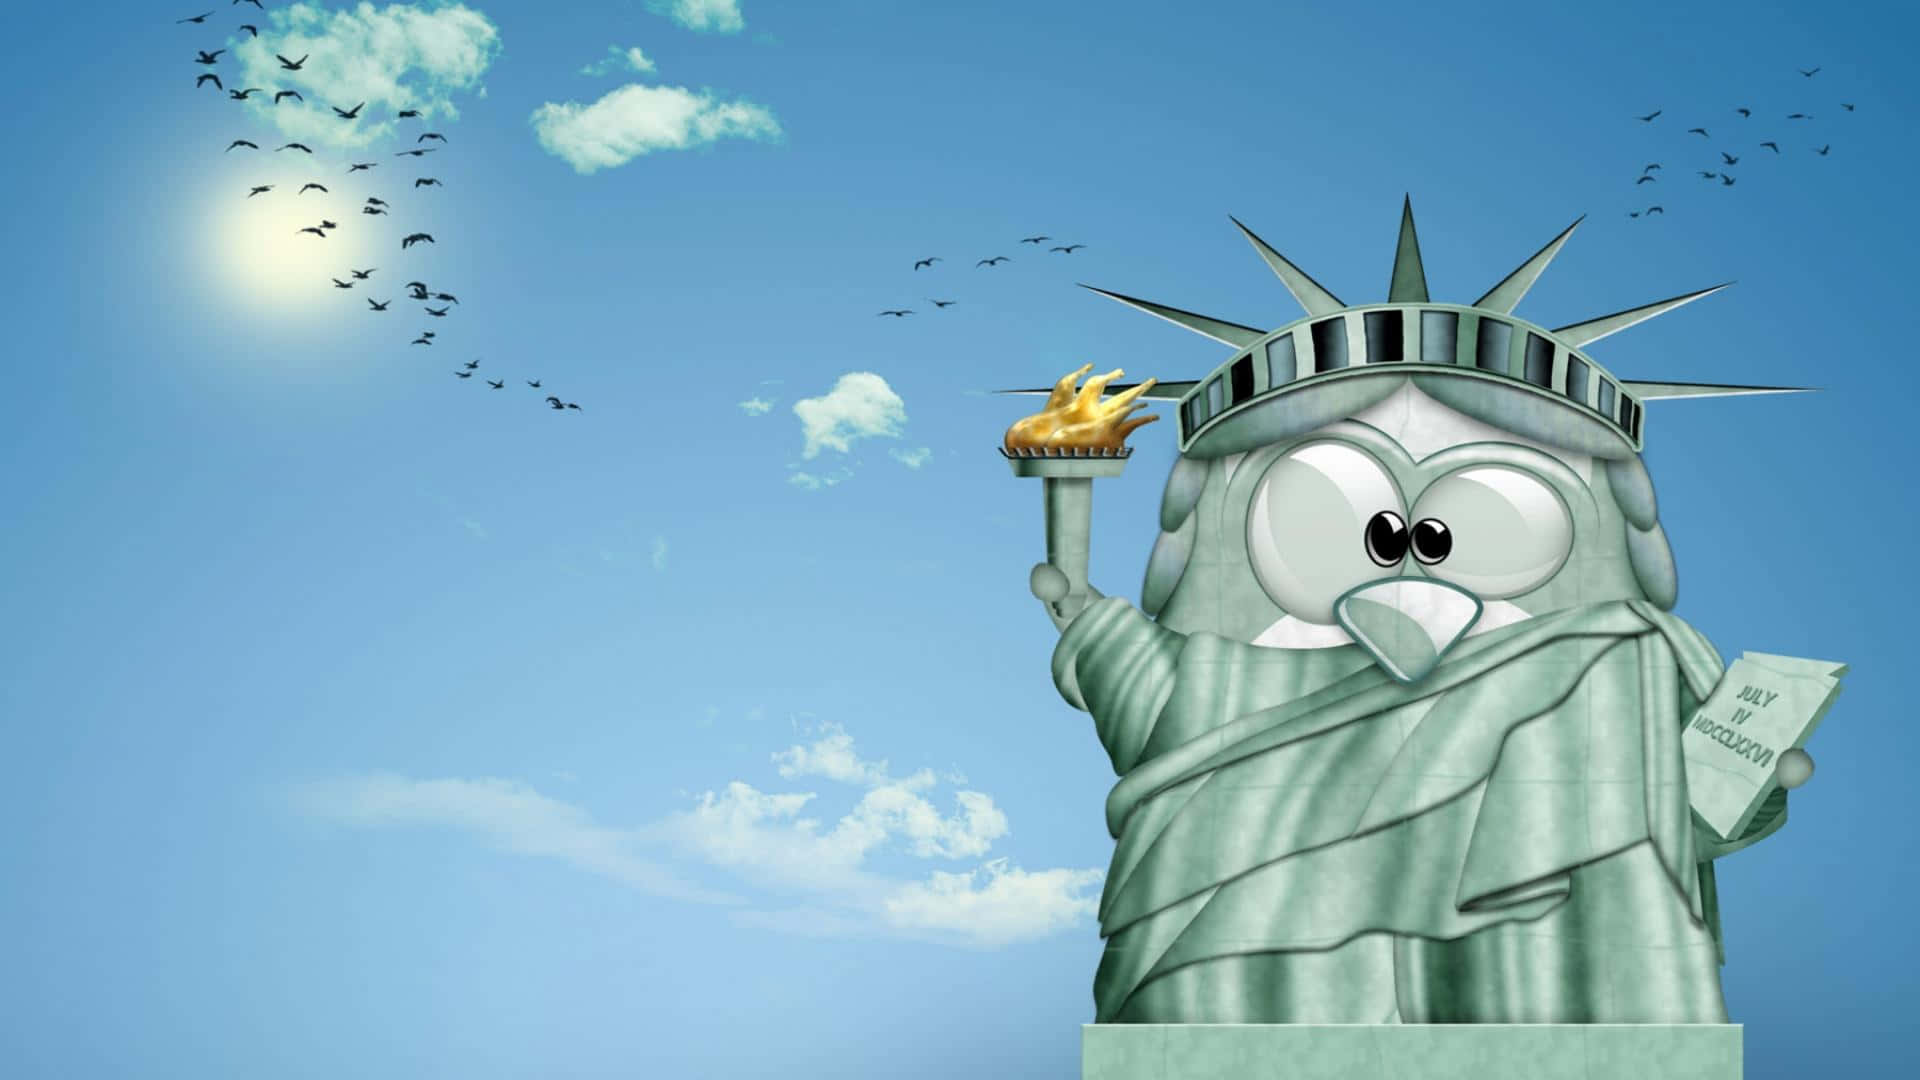 Crazy Cartoon Liberty Statue Wallpaper